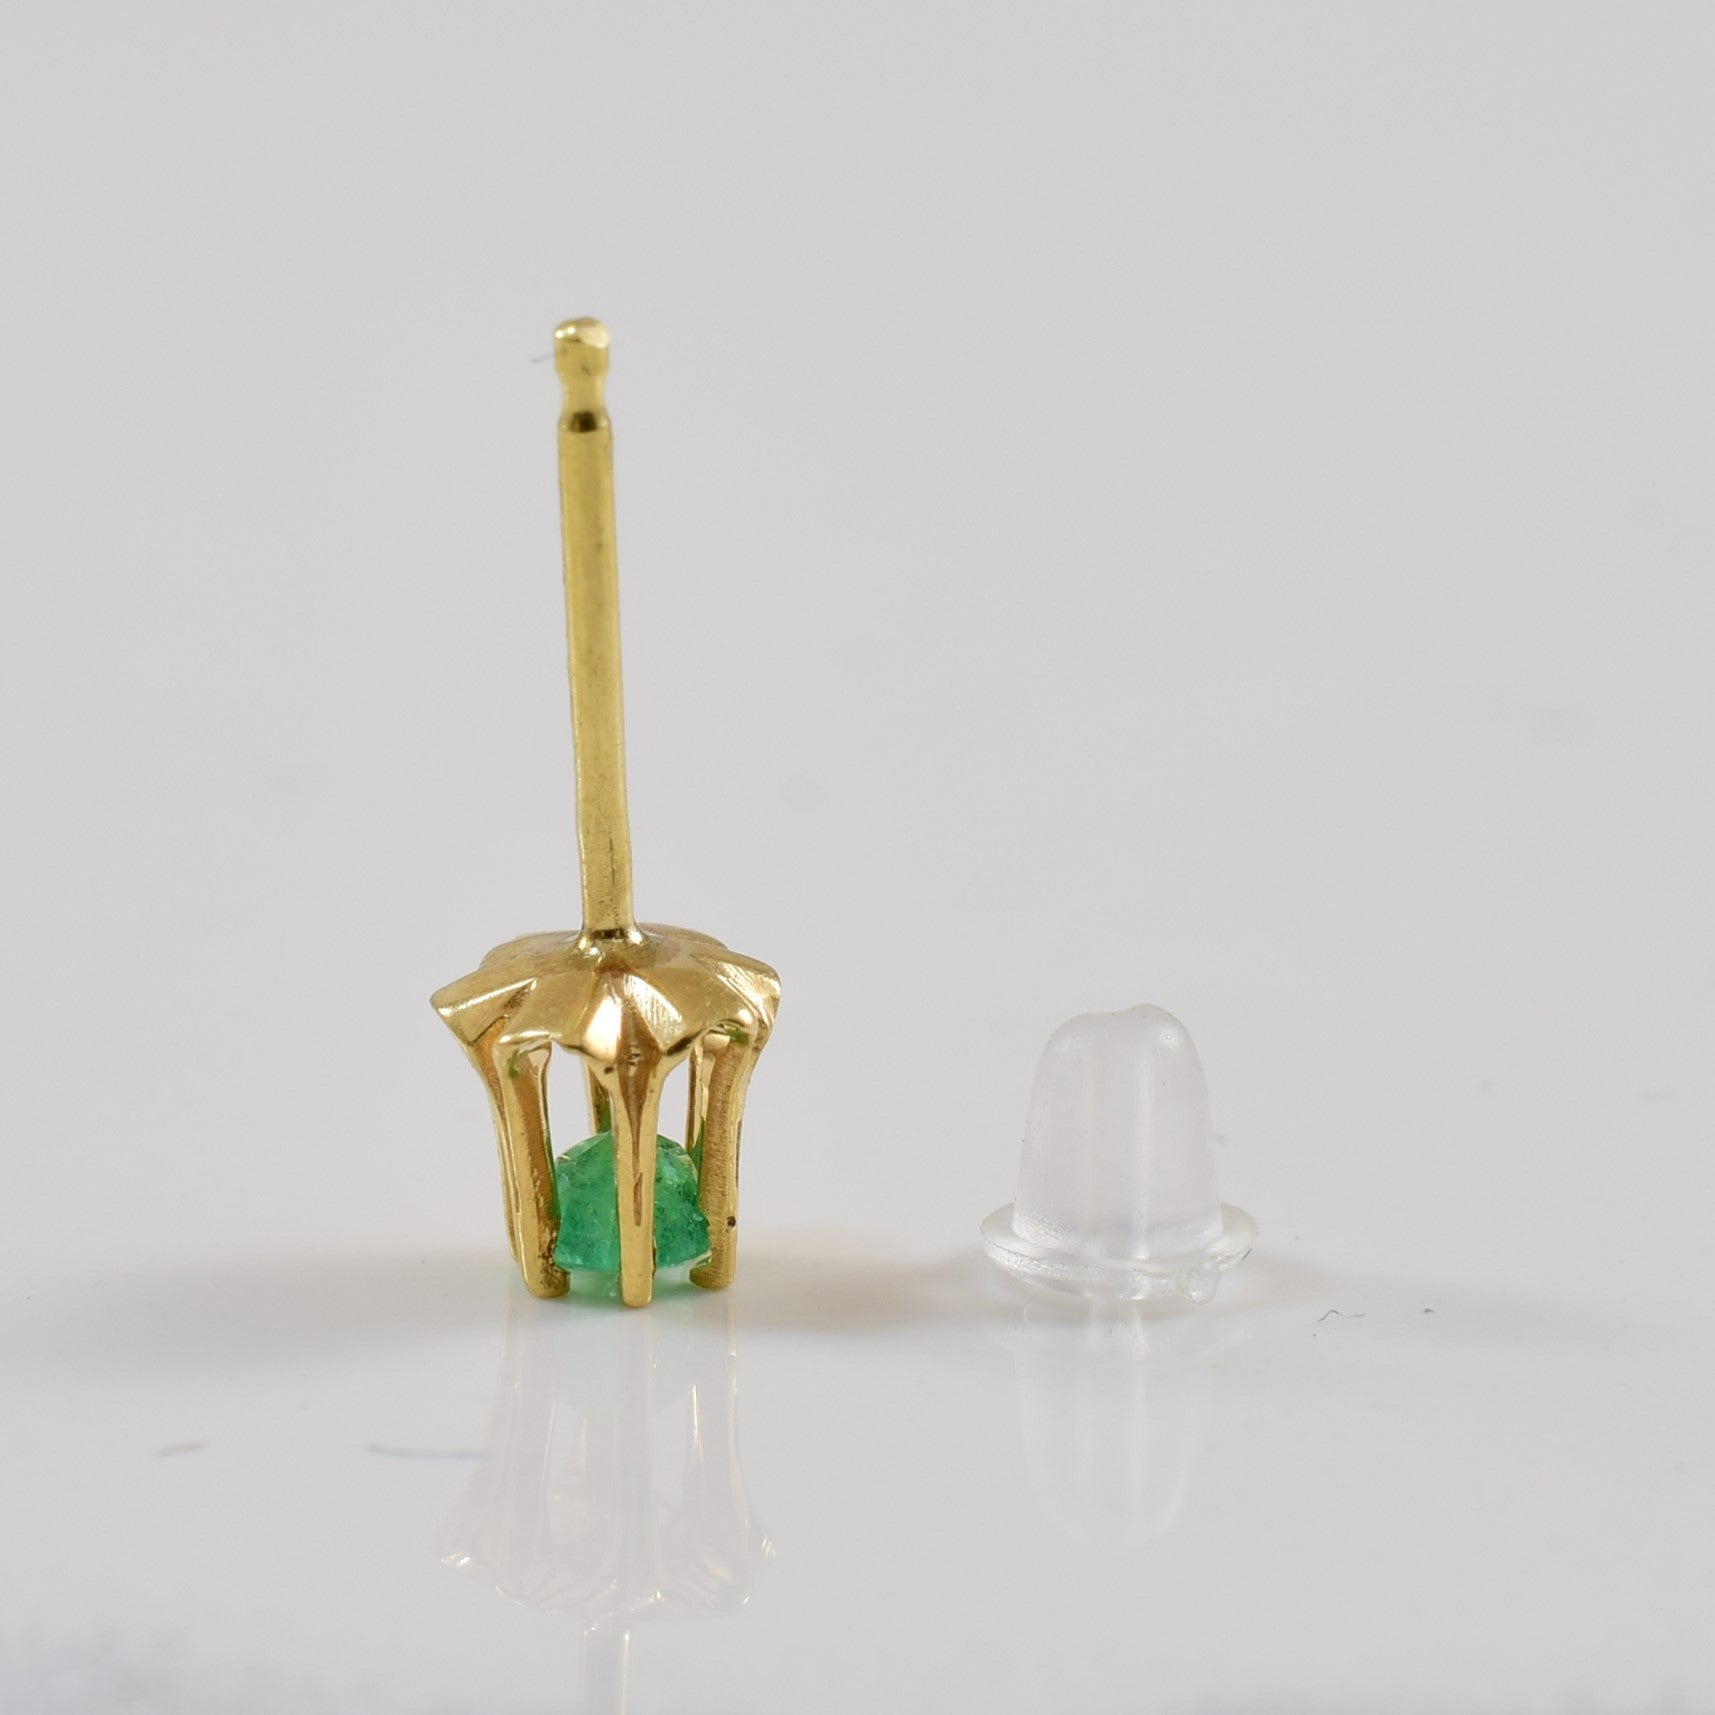 Belcher Set Emerald Stud Earrings | 0.16ctw |